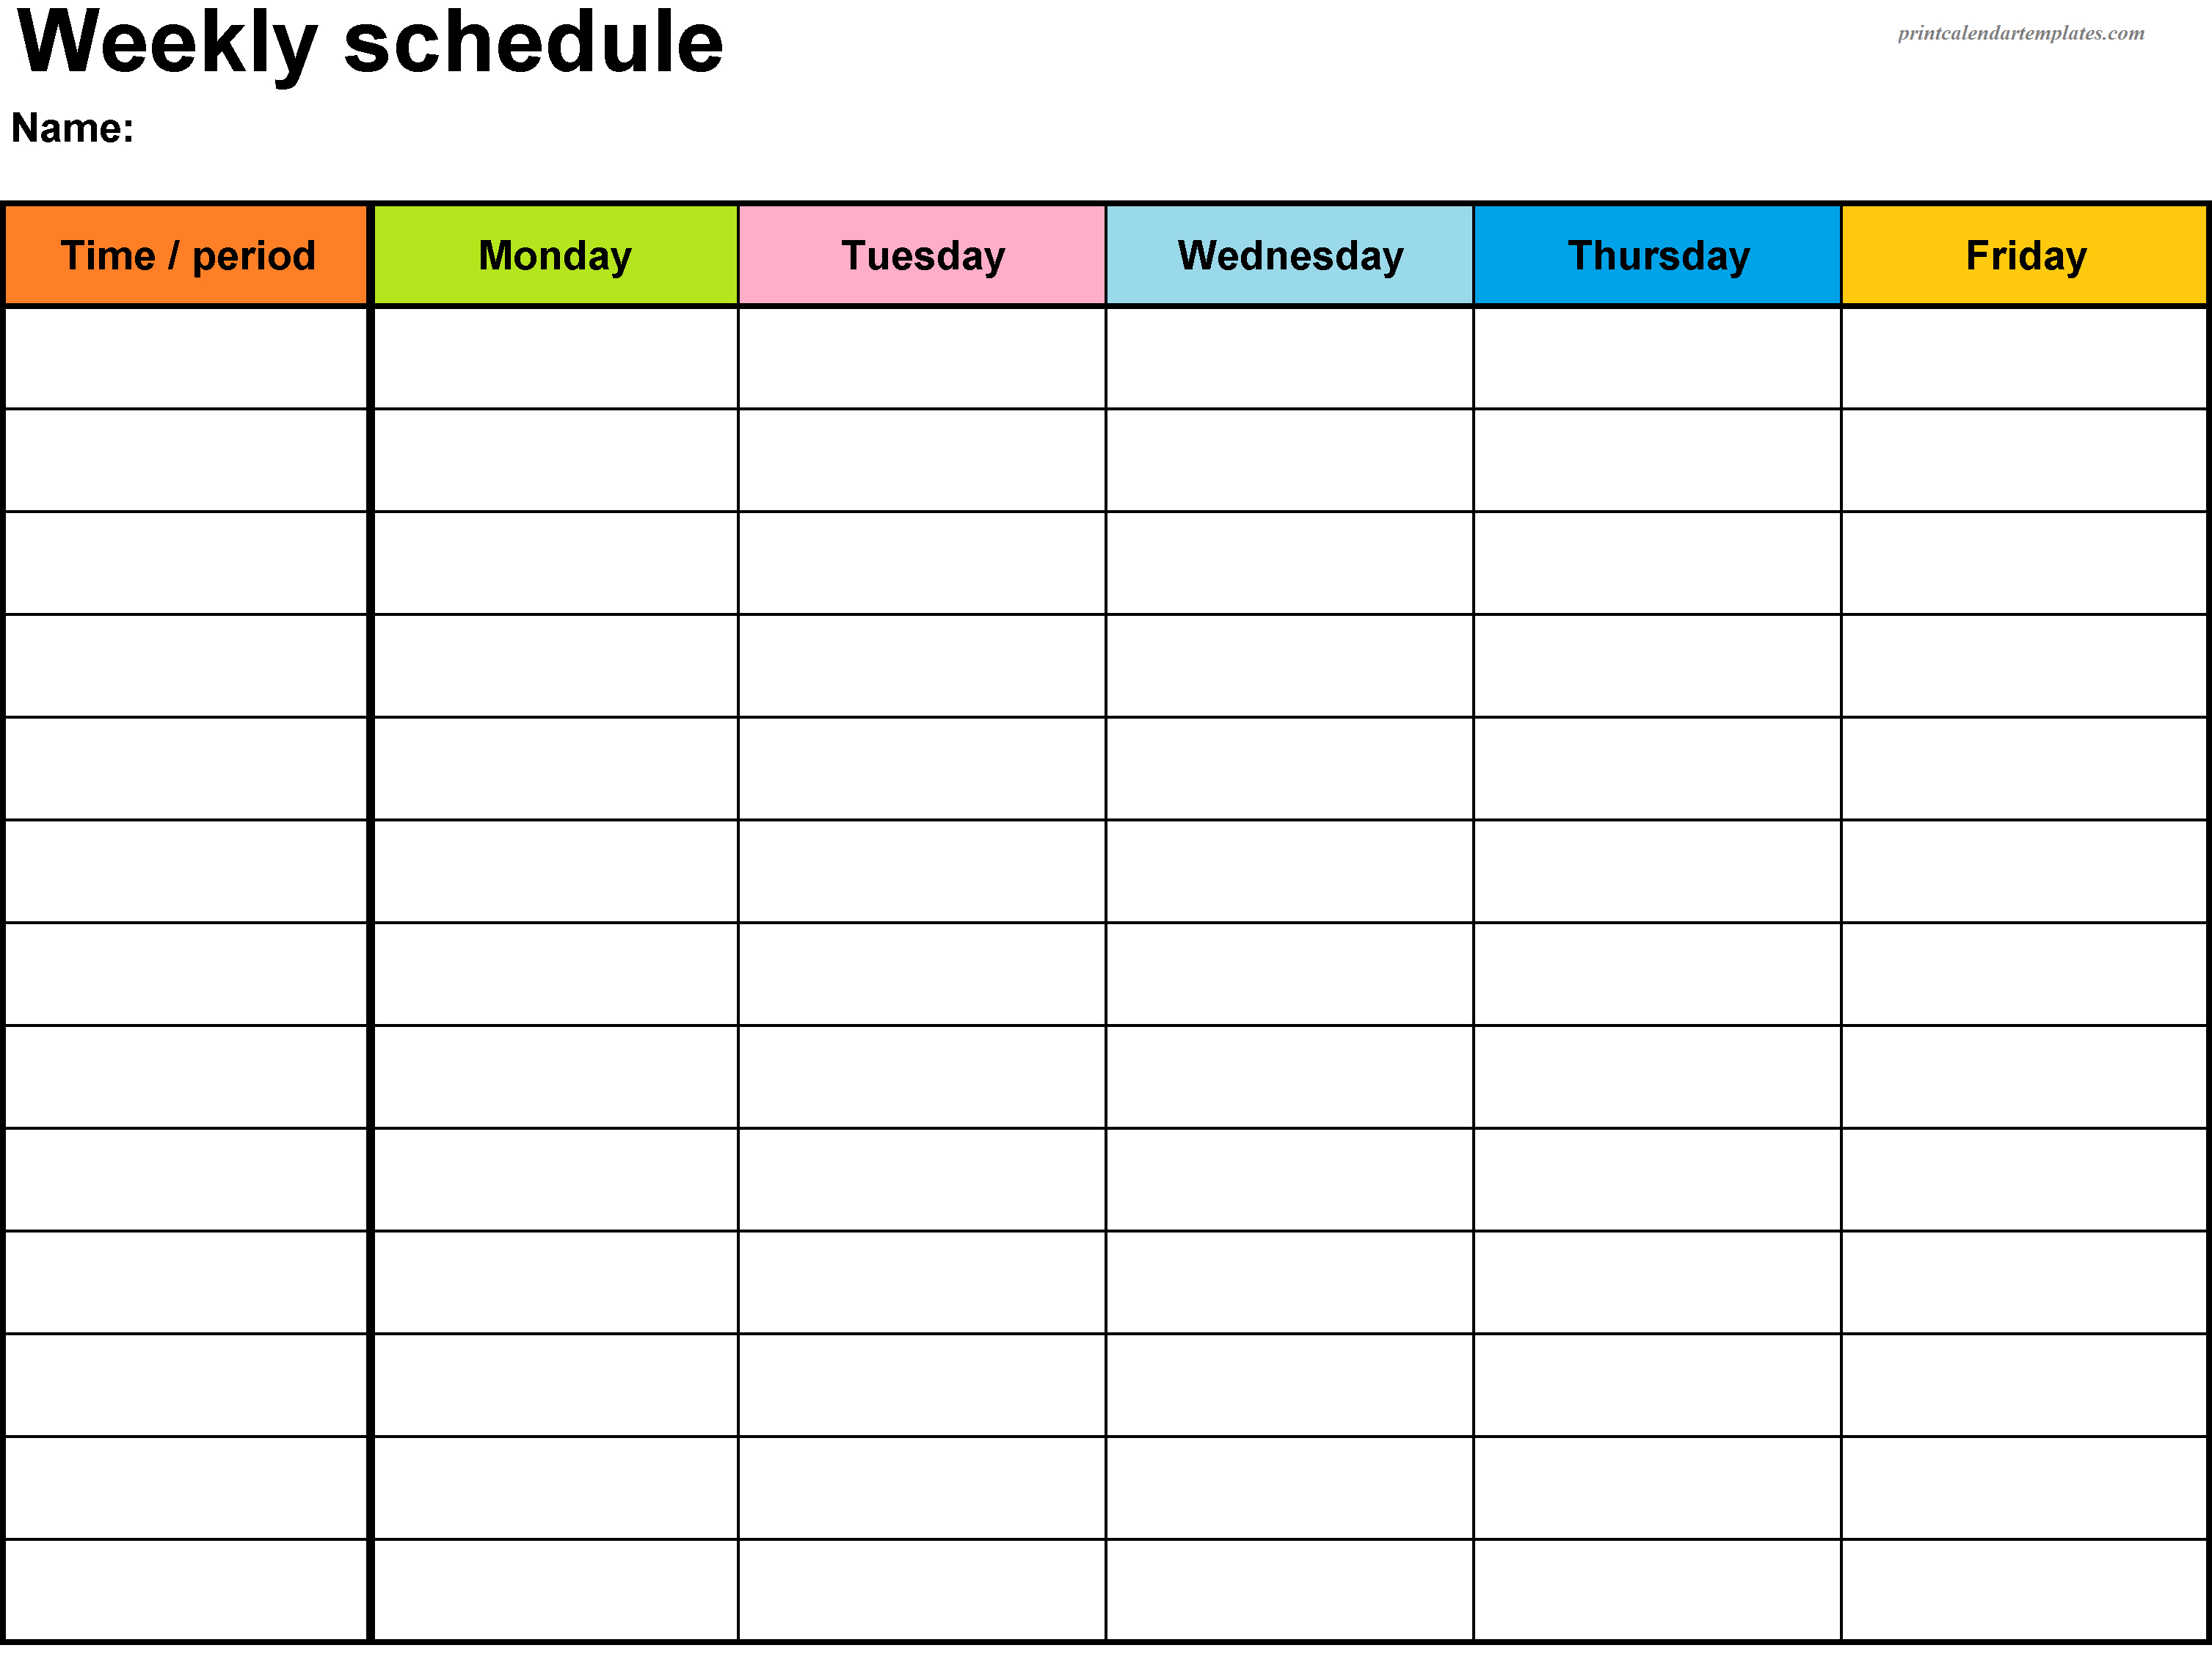 Printable Weekly Planner Template | Weekly Planner Printable inside Hourly Weekly Schedule Pdf